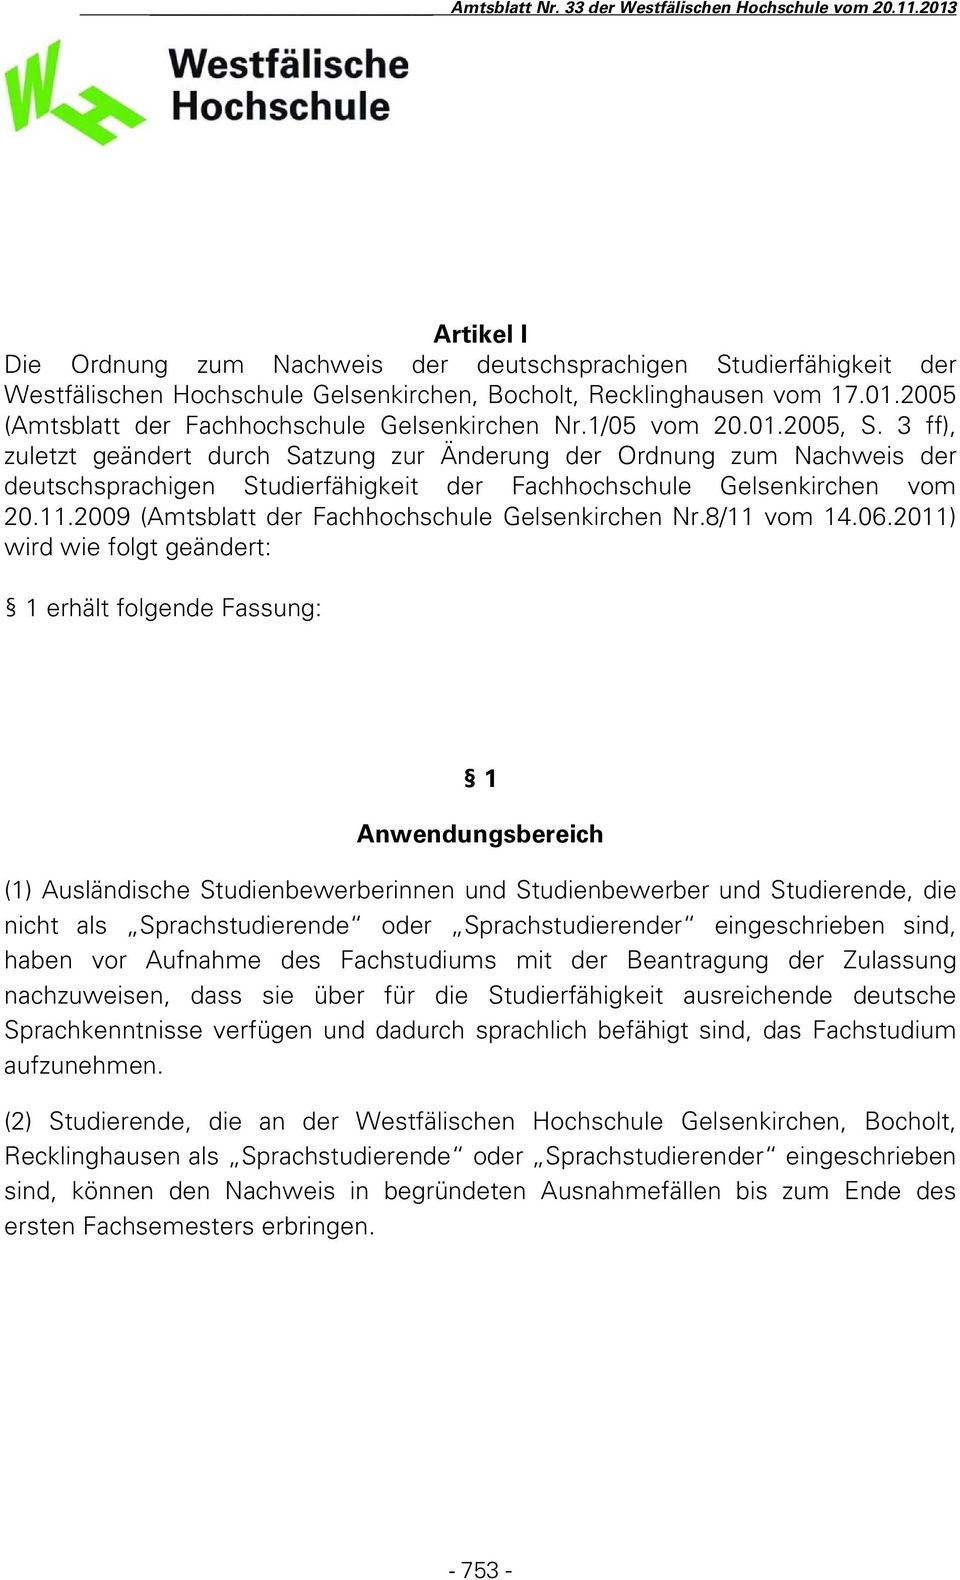 3 ff), zuletzt geändert durch Satzung zur Änderung der Ordnung zum Nachweis der deutschsprachigen Studierfähigkeit der Fachhochschule Gelsenkirchen vom 20.11.